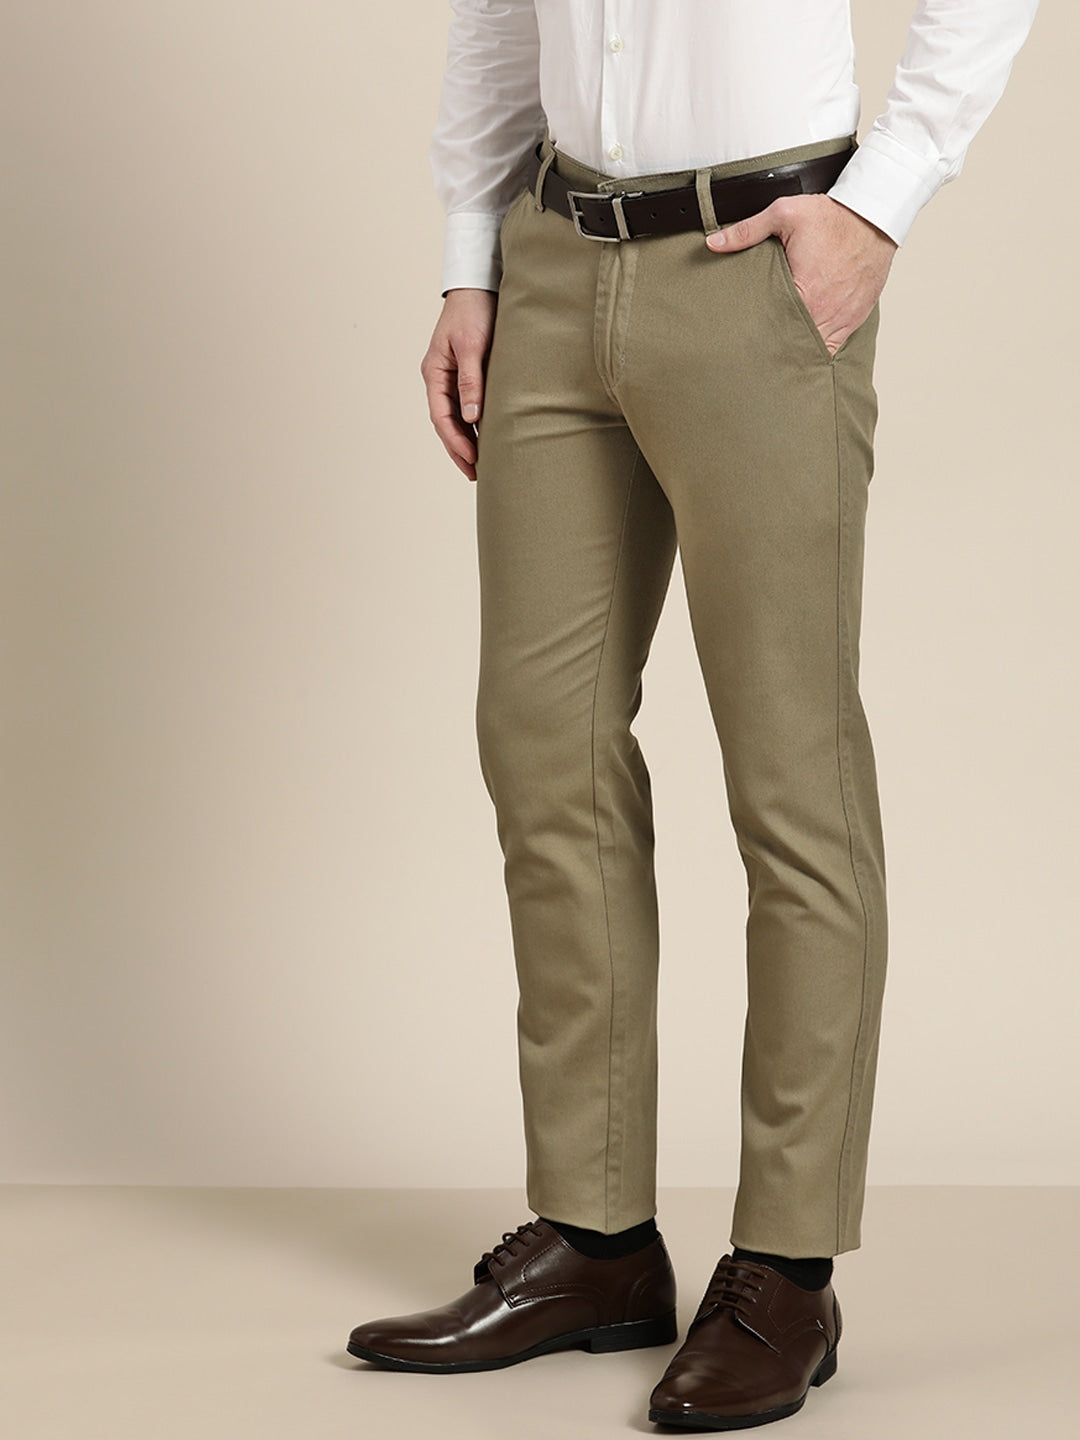 2022 Men's Spring High Quality Business Suit Trousers /male Slim Fit Solid  Color Leisure Dress Suit Pants Homme 29-38 - Suit Pants - AliExpress